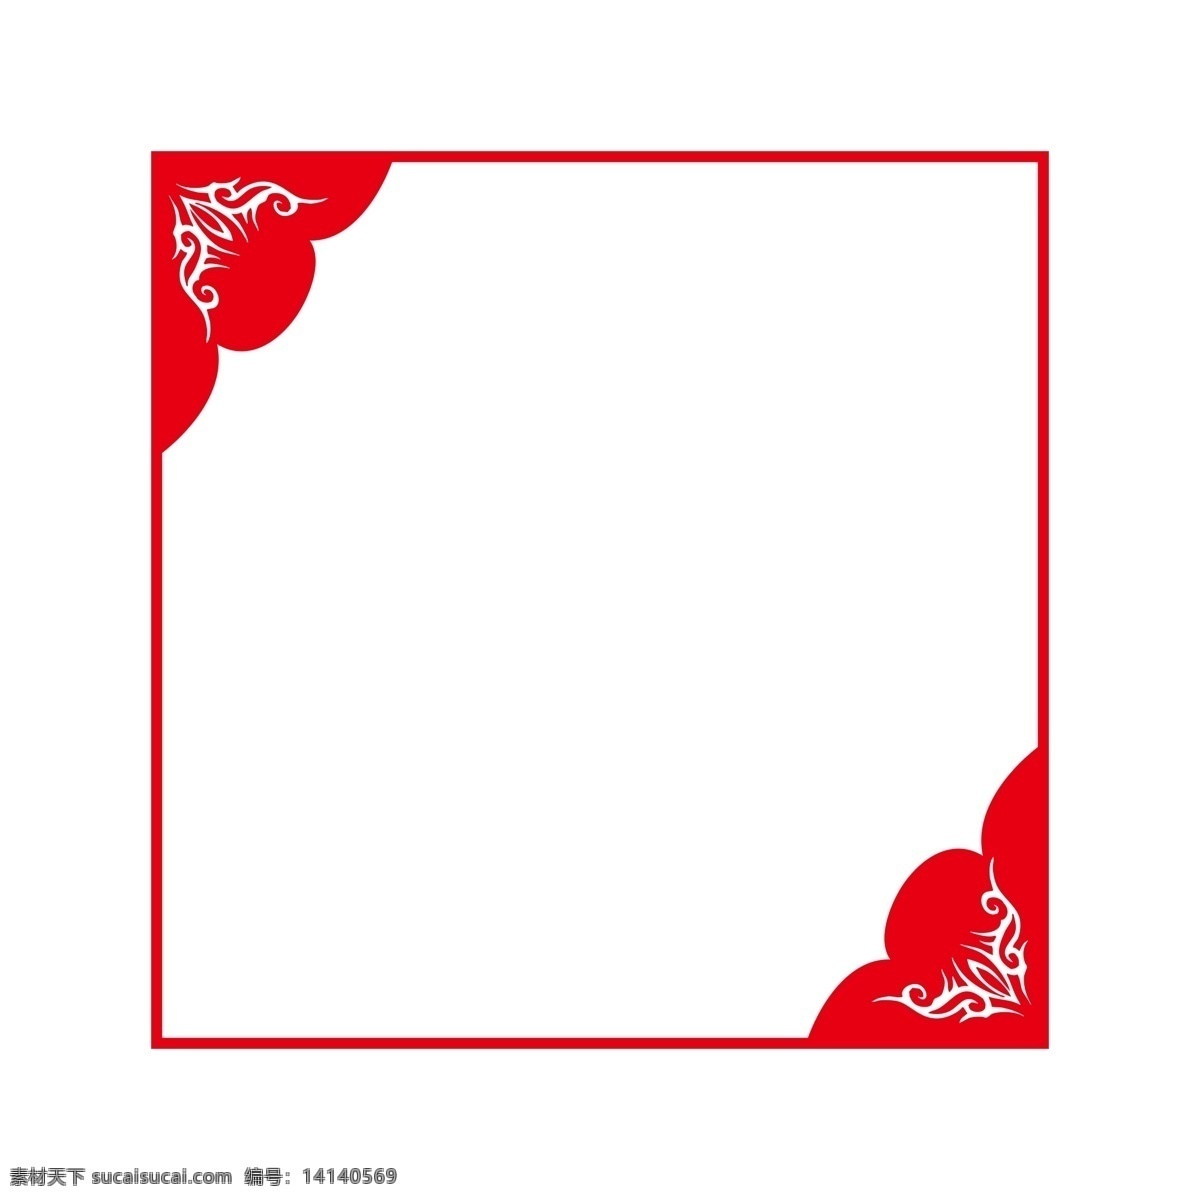 简约 矩形 花纹 中国 风 红色 纹理 边框 中国风 纹理边框